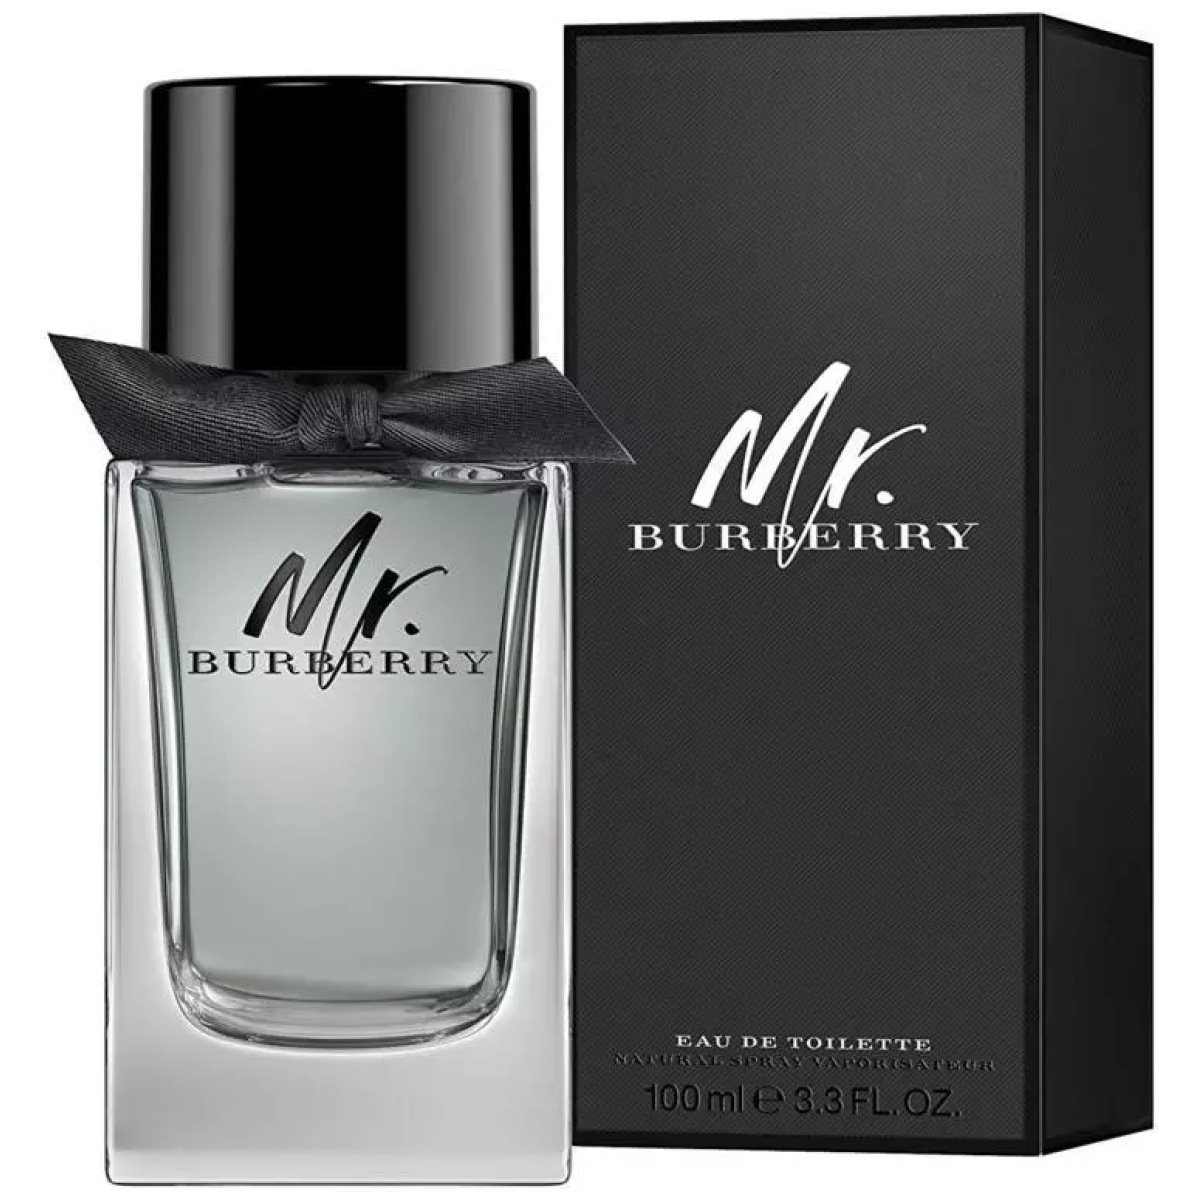 Burberry Mr. Burberry EDT Perfume For Men 100ml